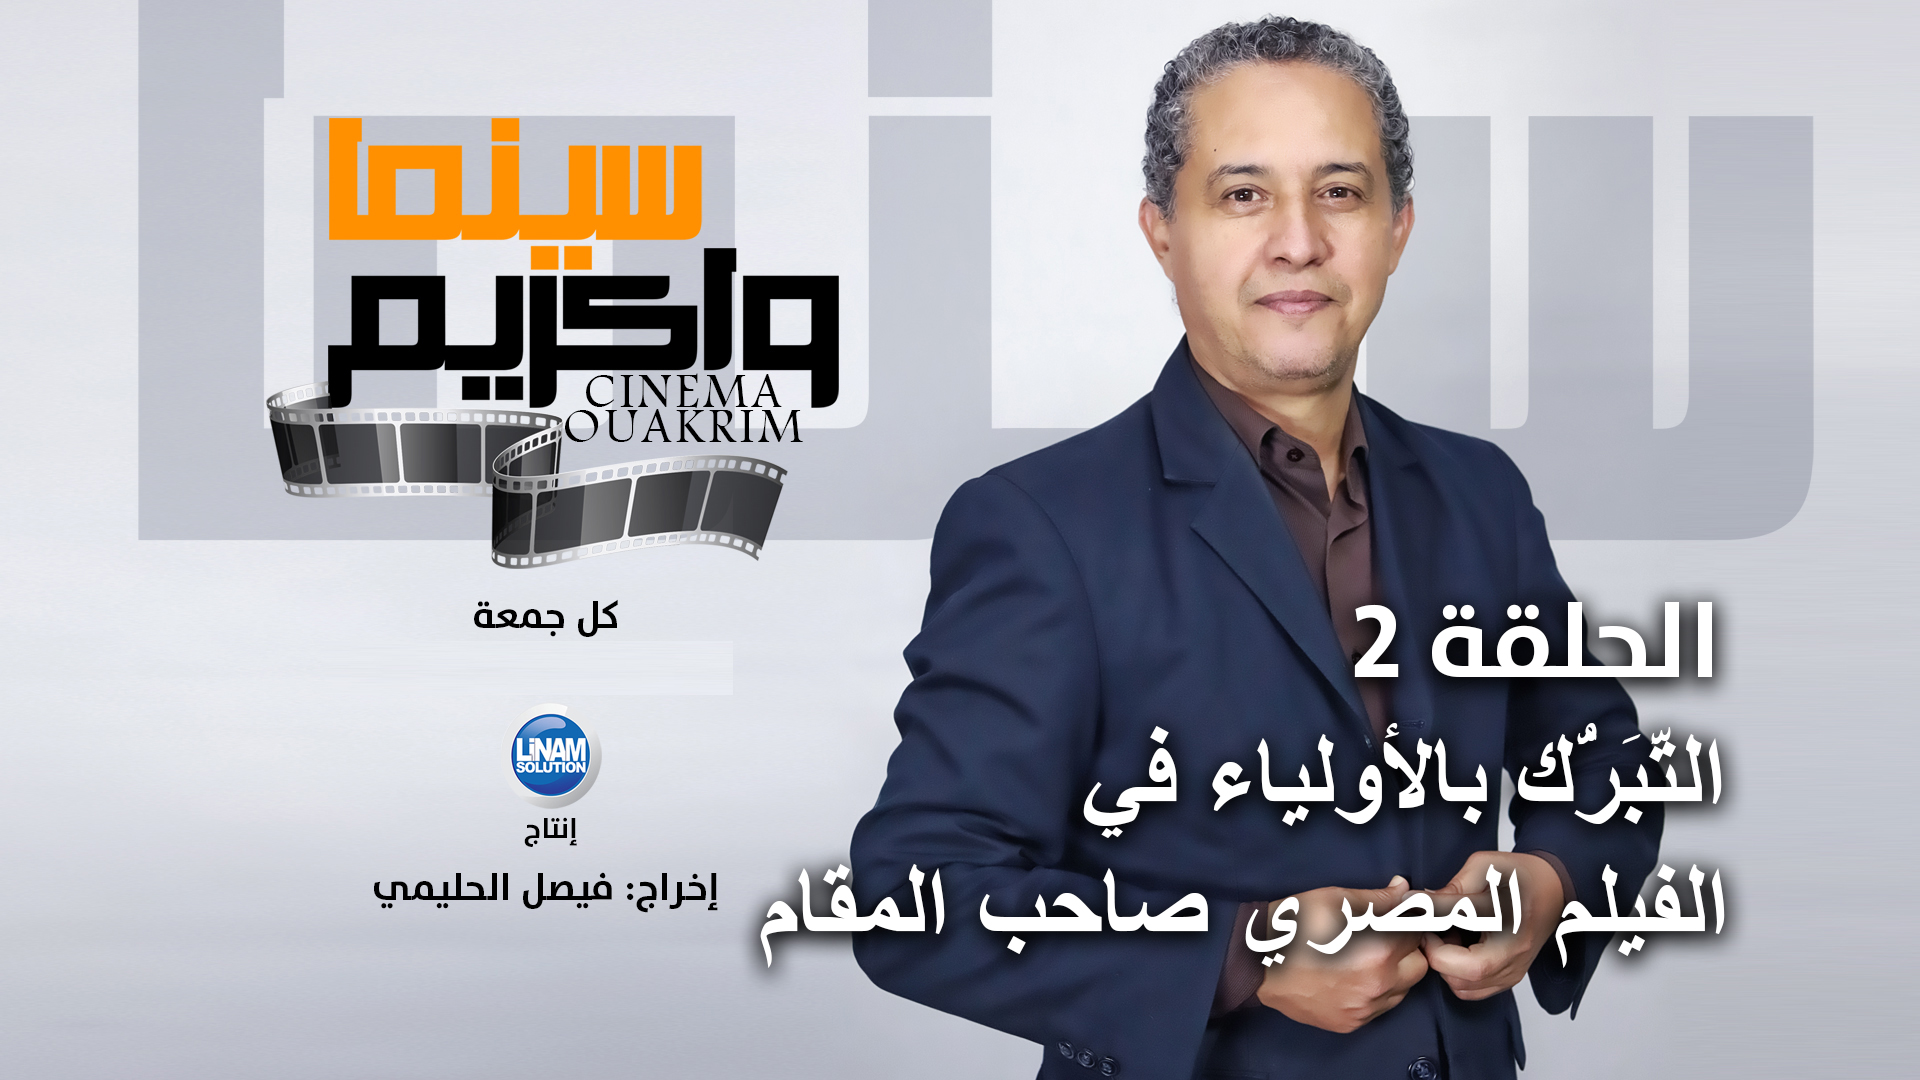 سينما واكريم الحلقة 2 التَّبَرُّك بالأولياء في الفيلم المصري صاحب المقام